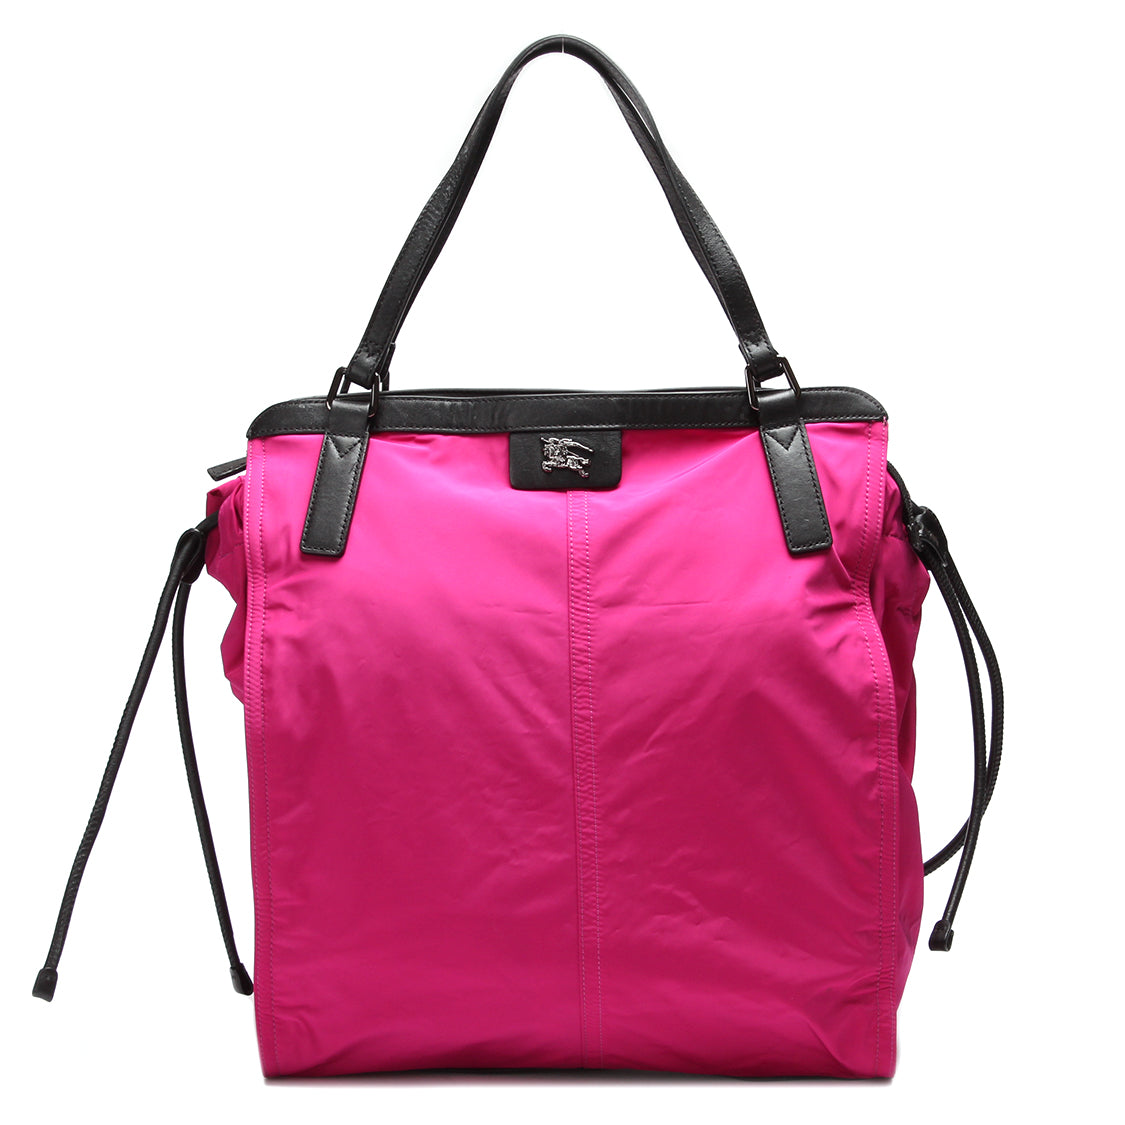 En verden af tasker til kvinder | farver | SPLISH